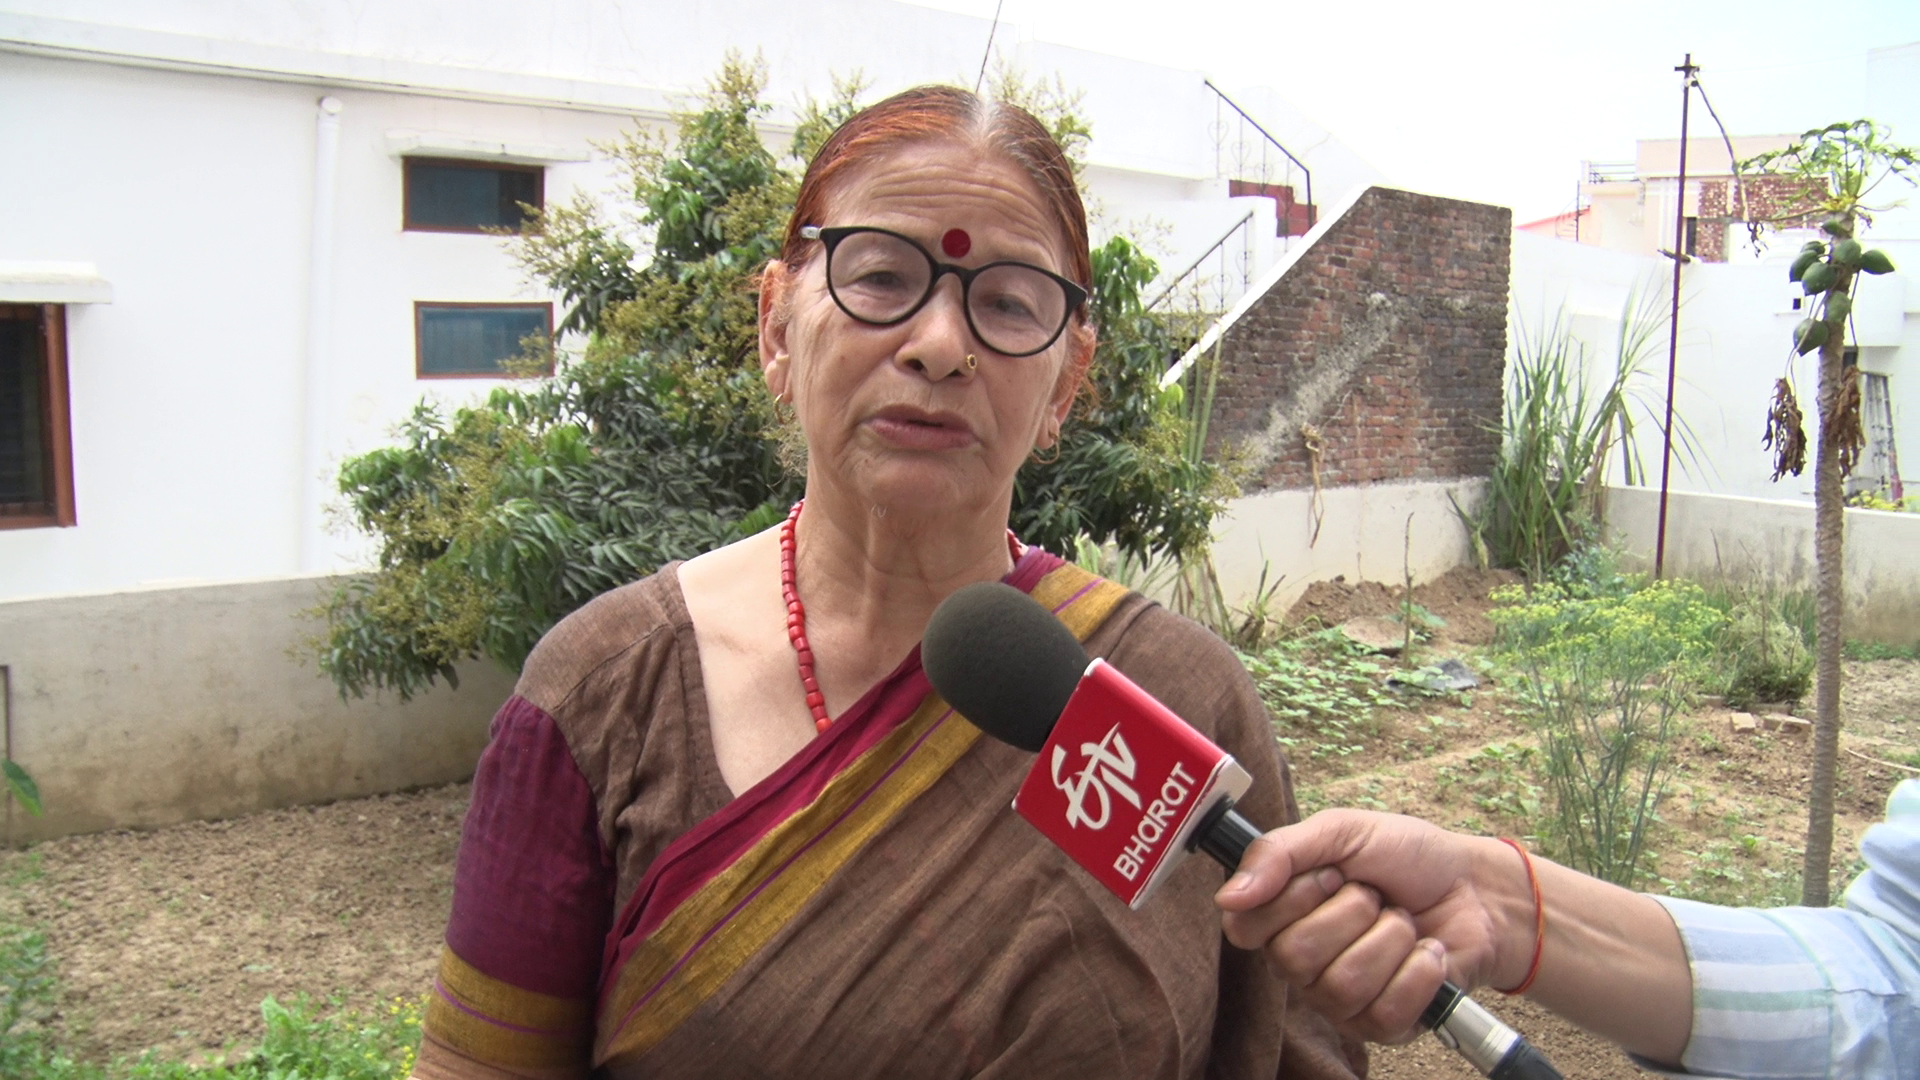 Padma Shri Jagar Singer Basanti Bisht